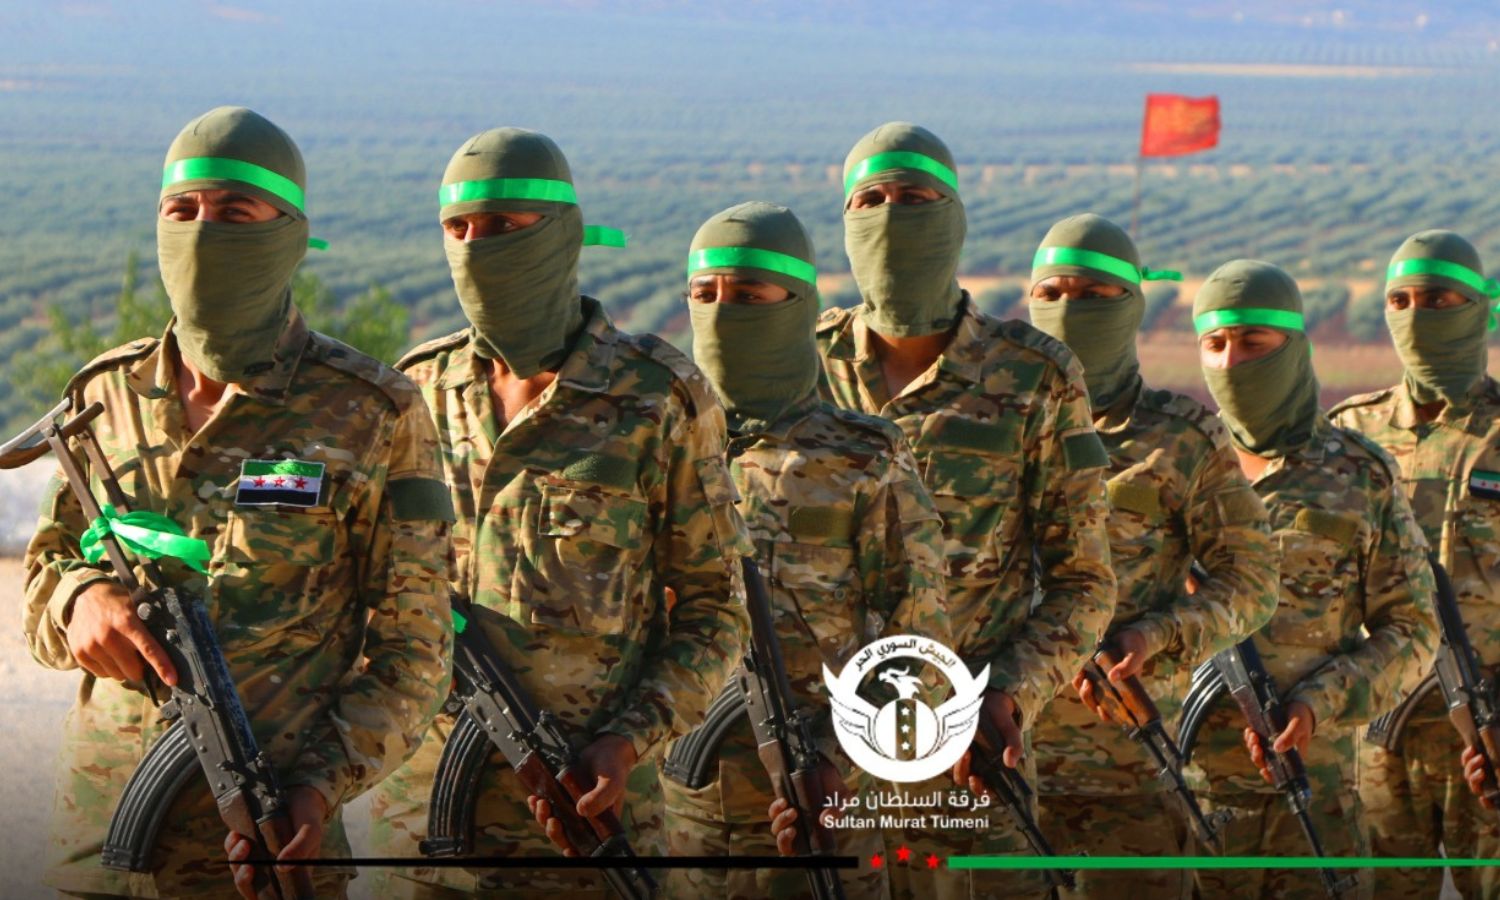 مقاتلون في فرقة "السلطان مراد" التابعة لـ"الجيش الوطني السوري" في ريف حلب - آب 2020 (فرقة السلطان مراد)